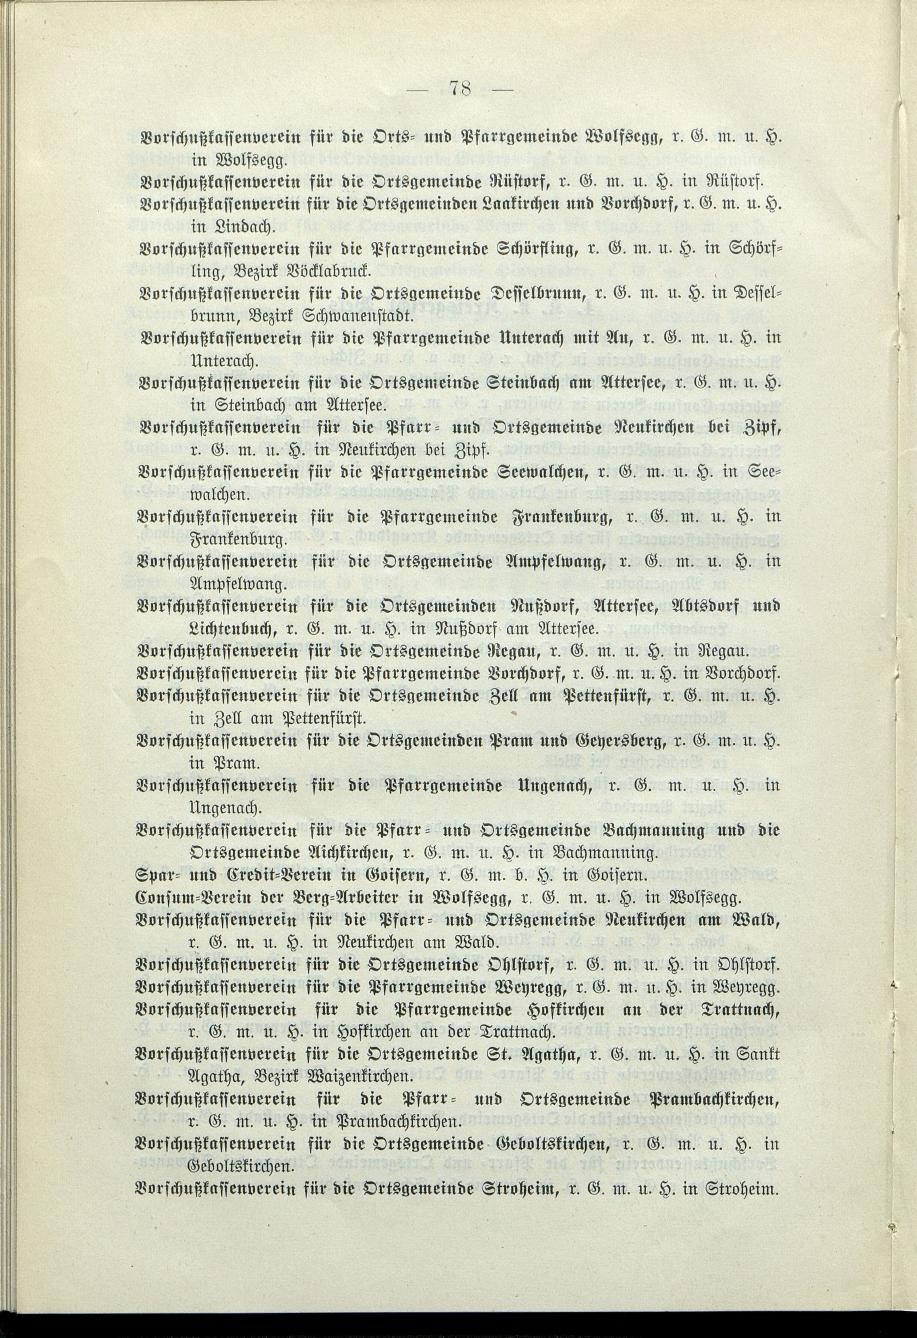 Verzeichnis der protokollierten Firmen und Genossenschaften in Oberösterreich 1908 - Seite 82